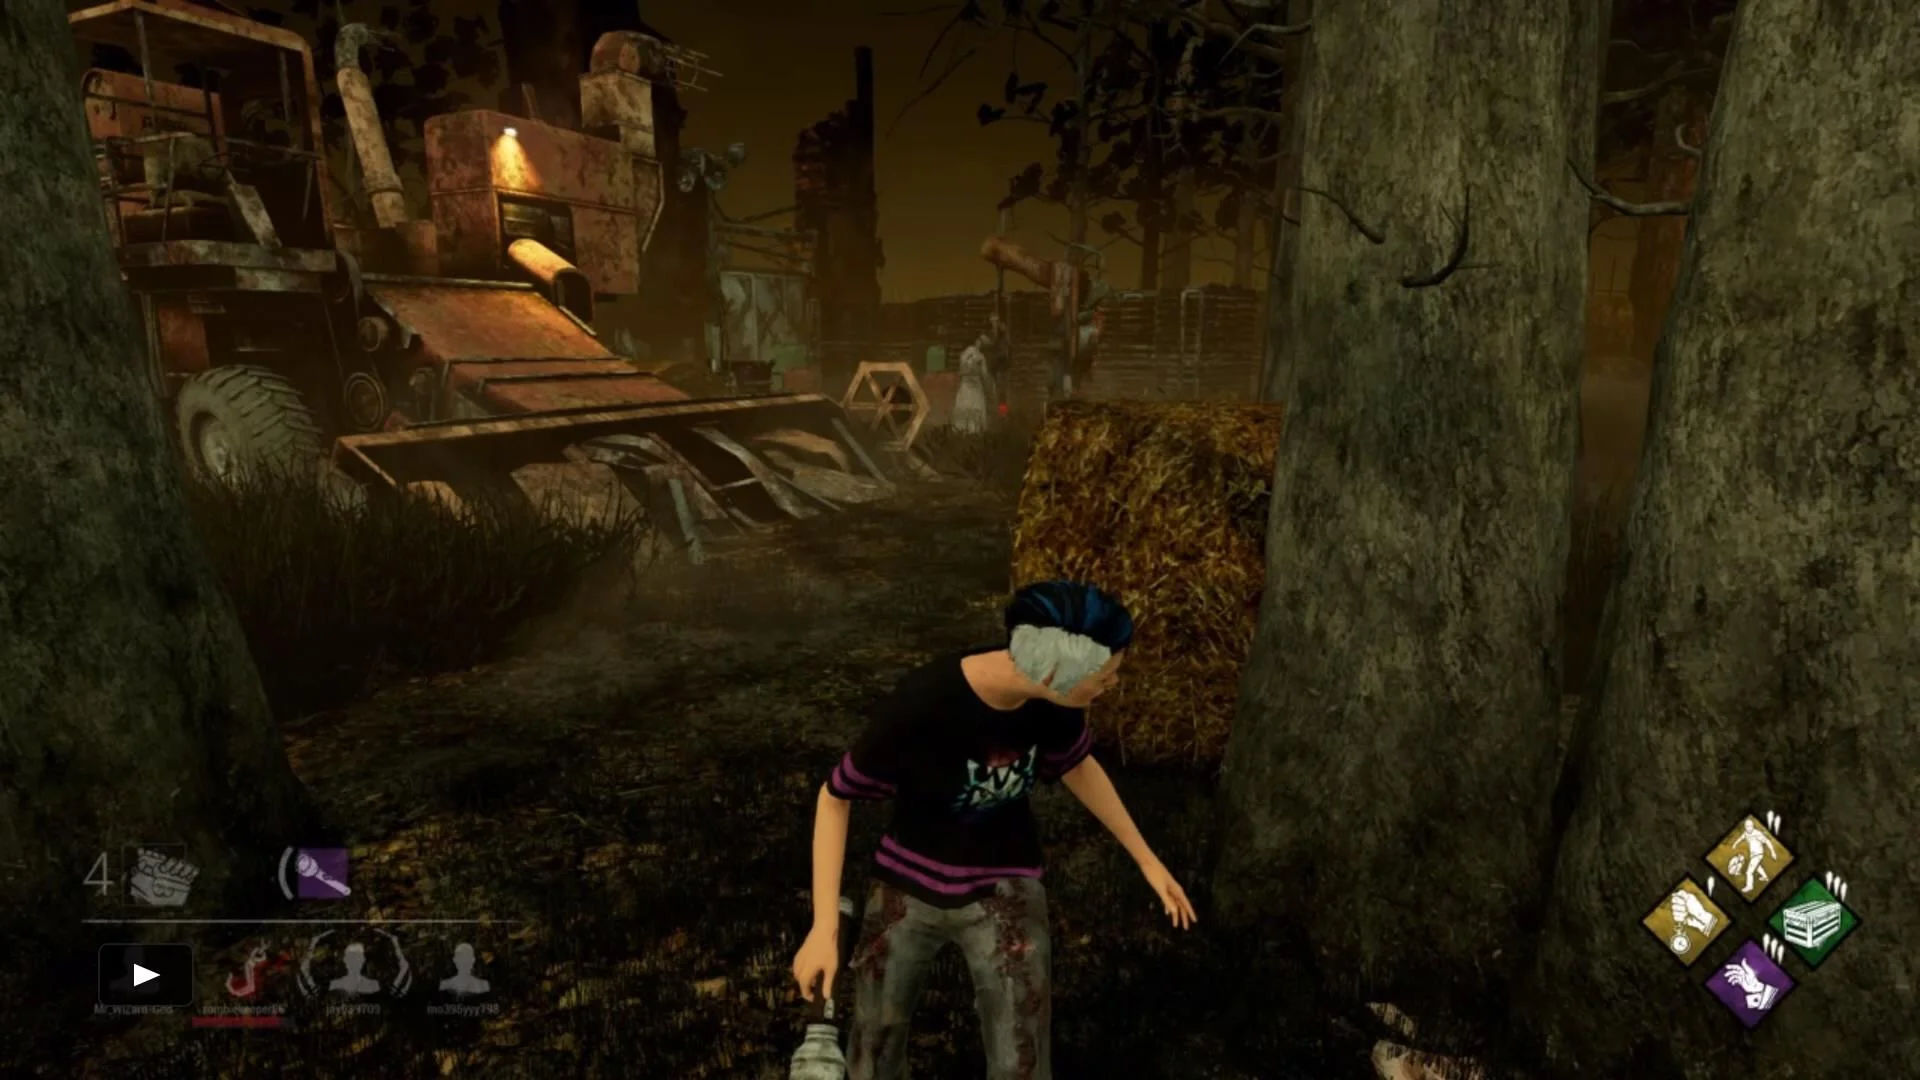 Image tirée du jeu Dead by Daylight, montrant le point de vue du survivant.